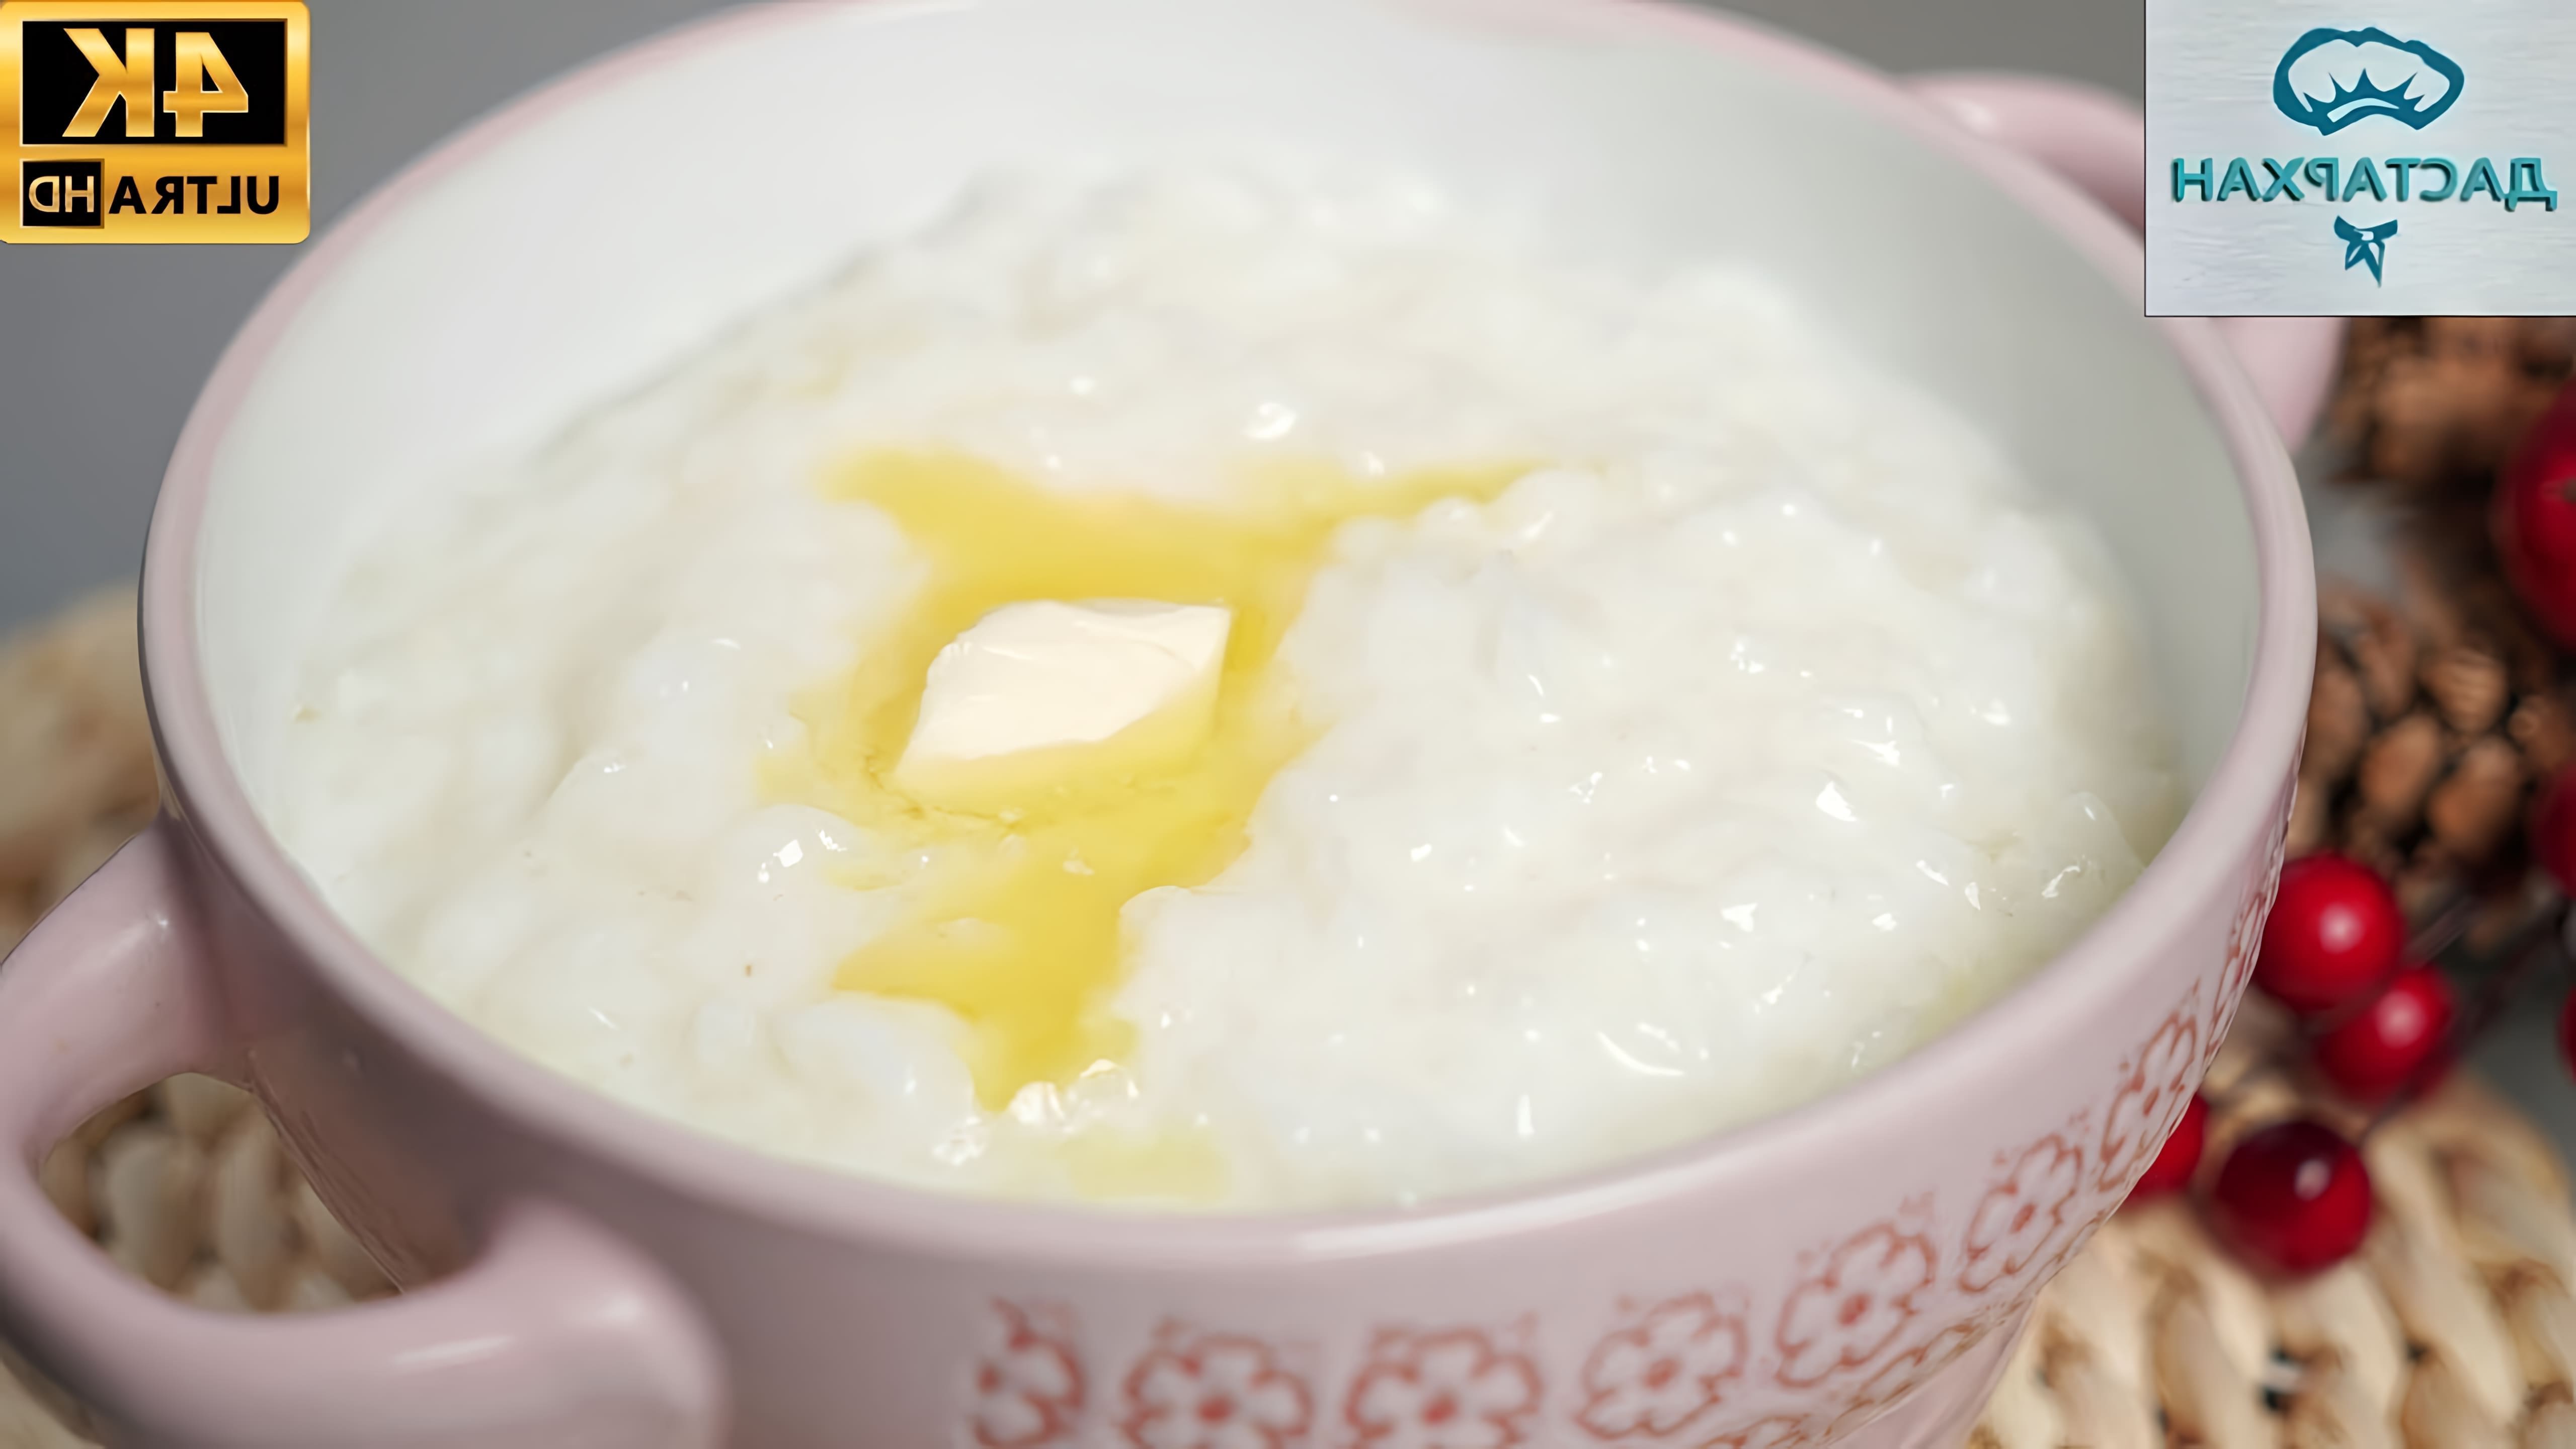 В этом видео демонстрируется рецепт приготовления рисовой каши, которая получается нежной и вкусной